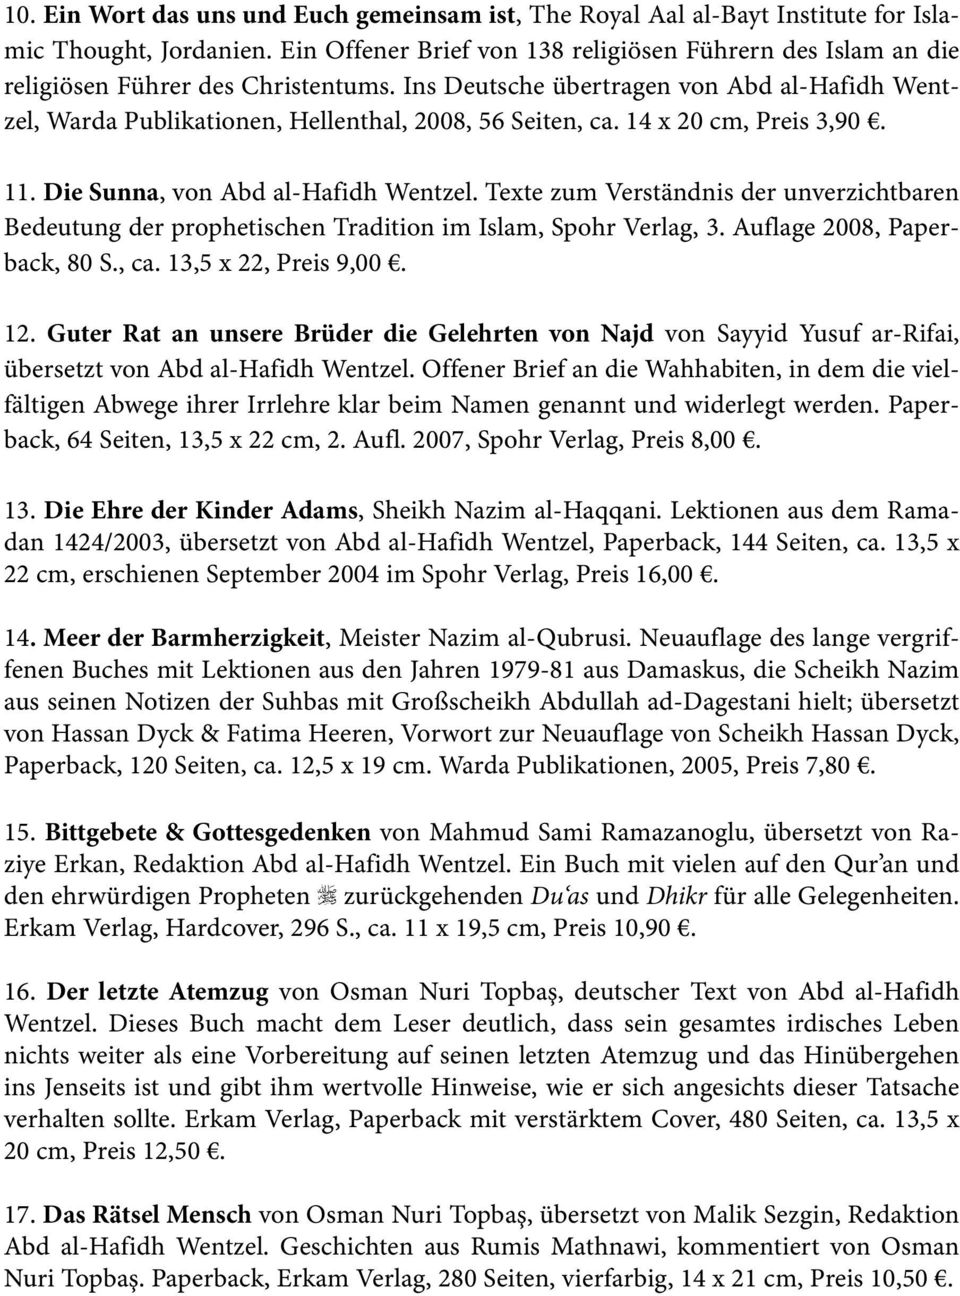 Ins Deutsche übertragen von Abd al-hafidh Wentzel, Warda Publikationen, Hellenthal, 2008, 56 Seiten, ca. 14 x 20 cm, Preis 3,90. 11. Die Sunna, von Abd al-hafidh Wentzel.